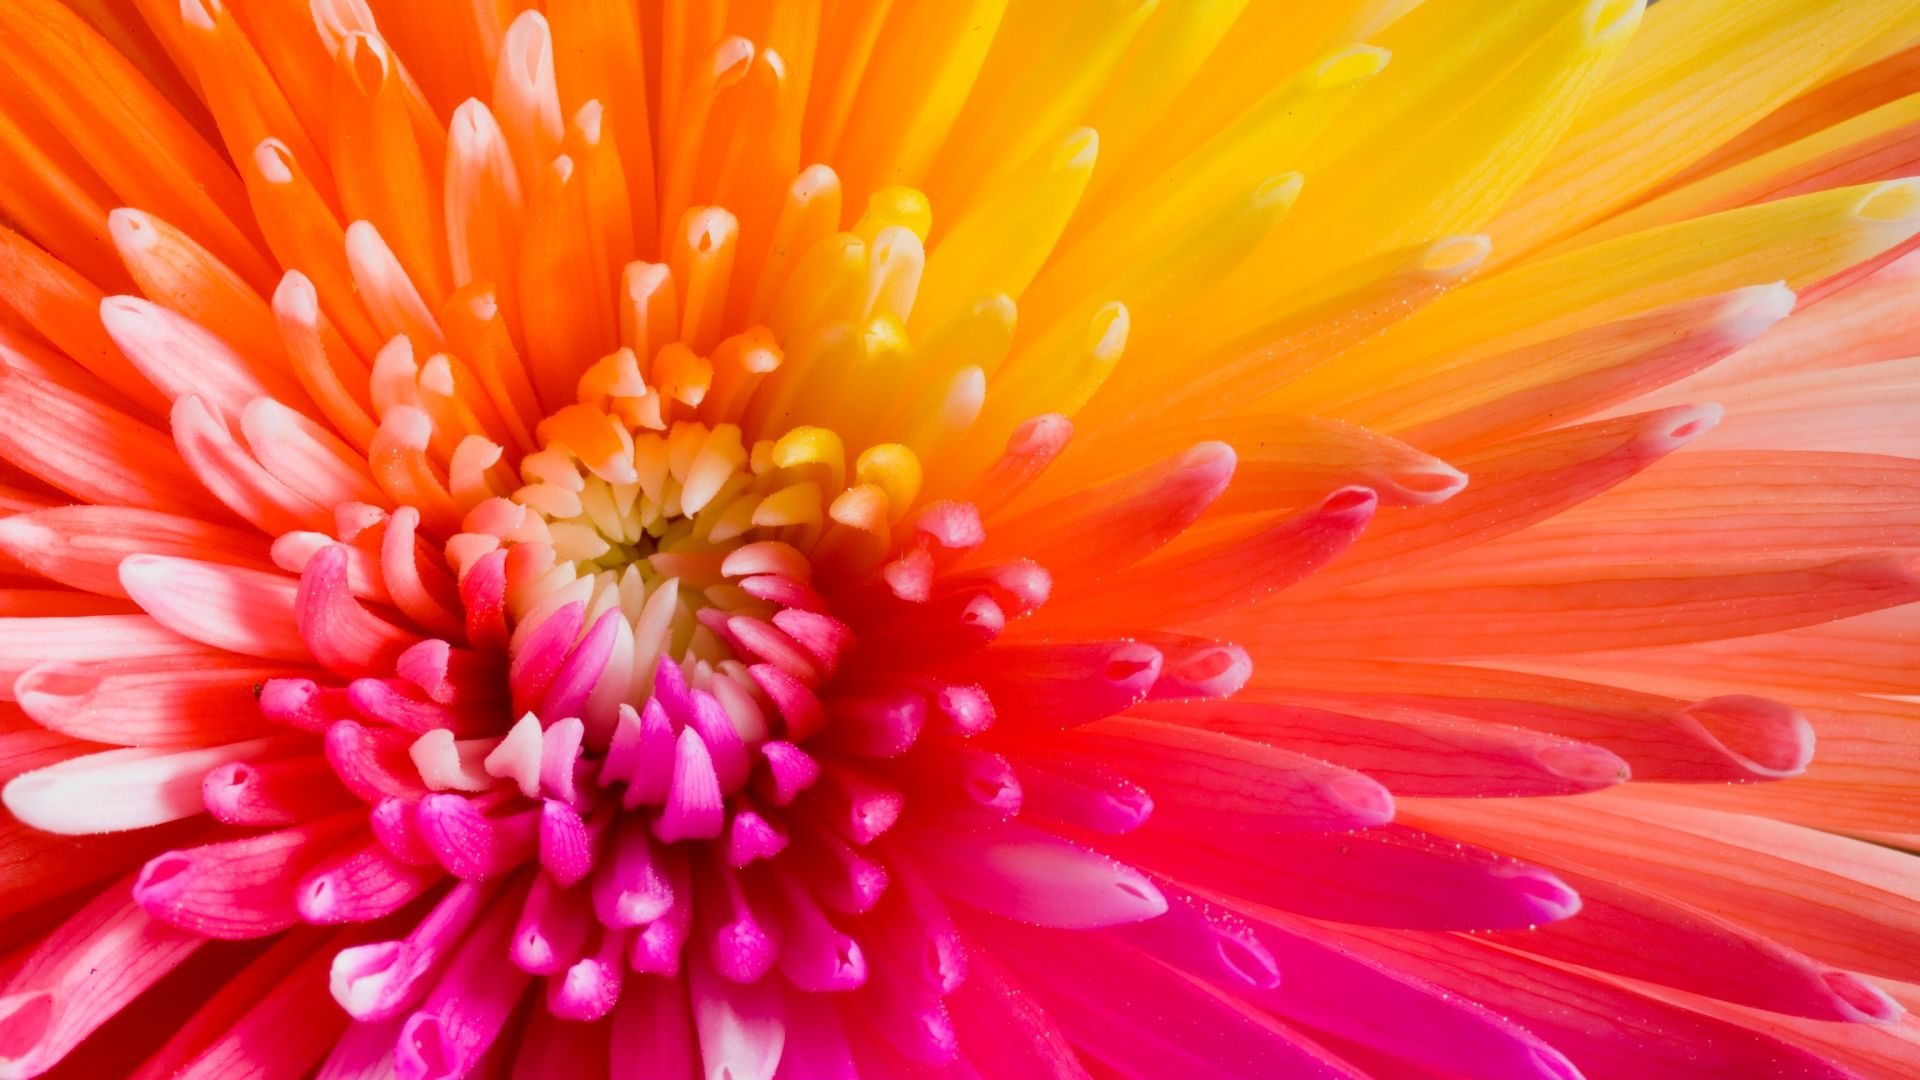 разноцветные цветы, 4k, HD, цветы, colourful flowers, 4k, HD wallpaper, flowers (horizontal)